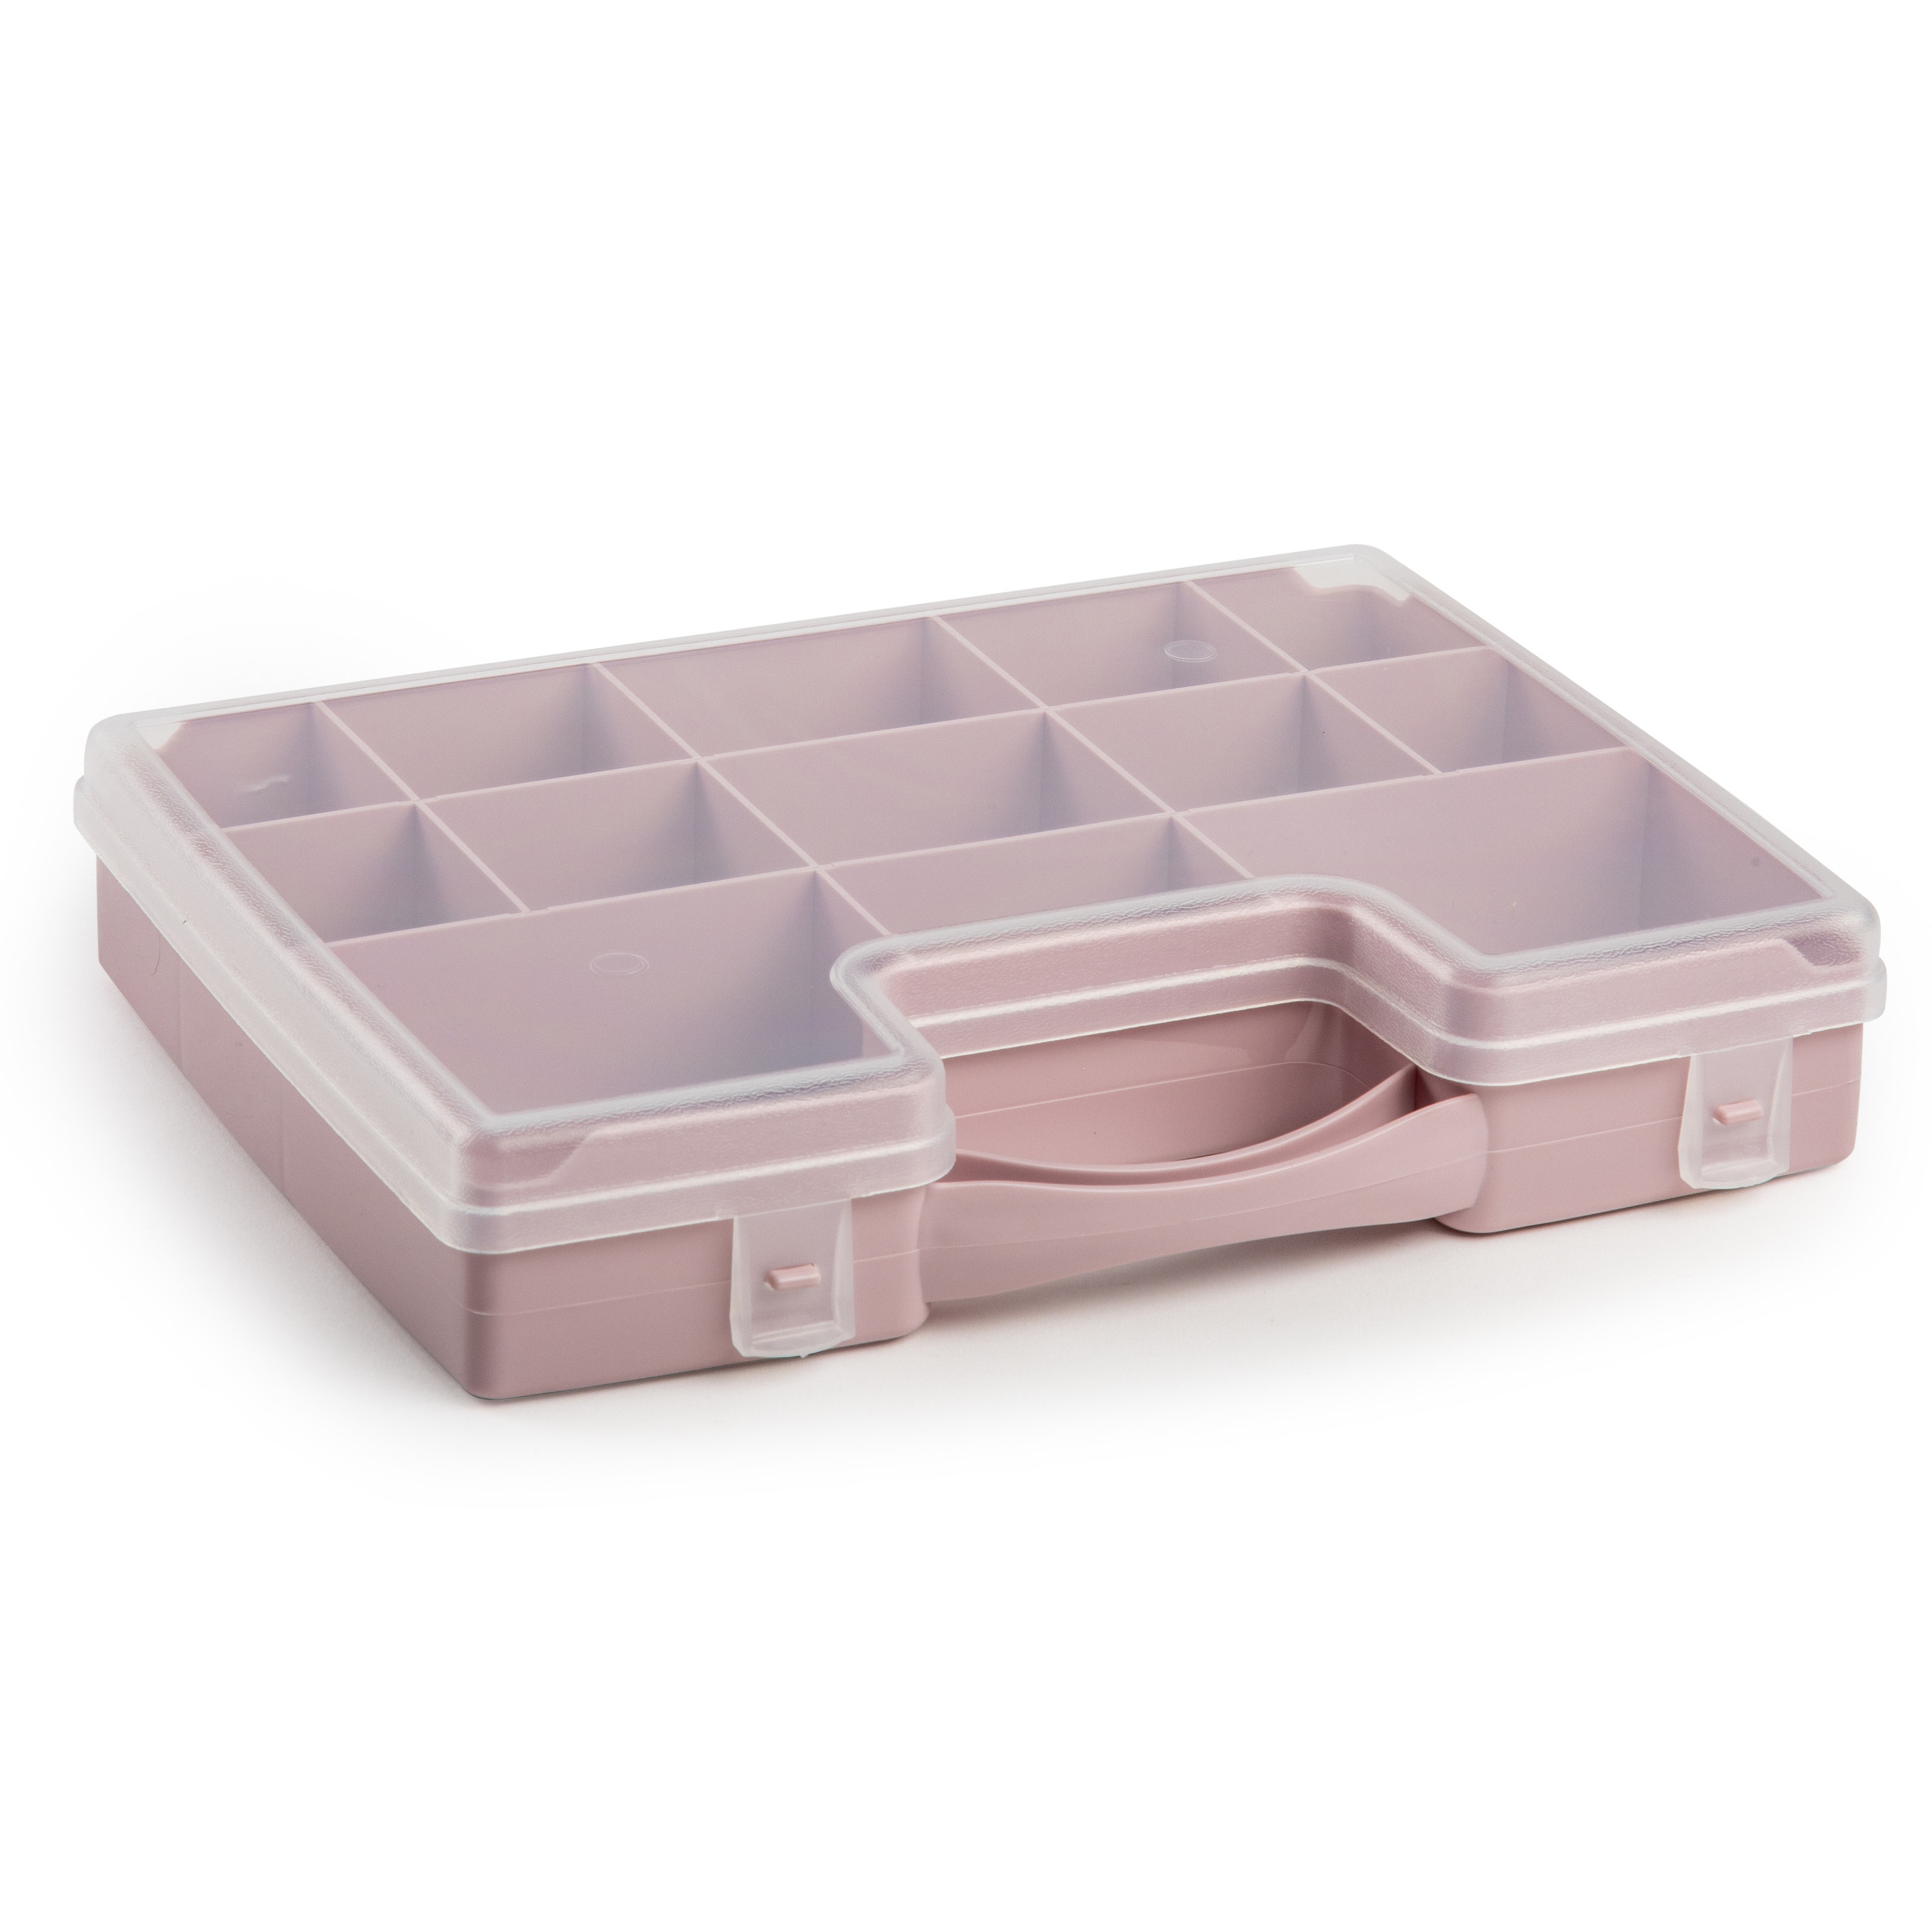 Opbergkoffertje-opbergdoos-sorteerbox 13-vaks kunststof oud roze 27 x 20 x 3 cm